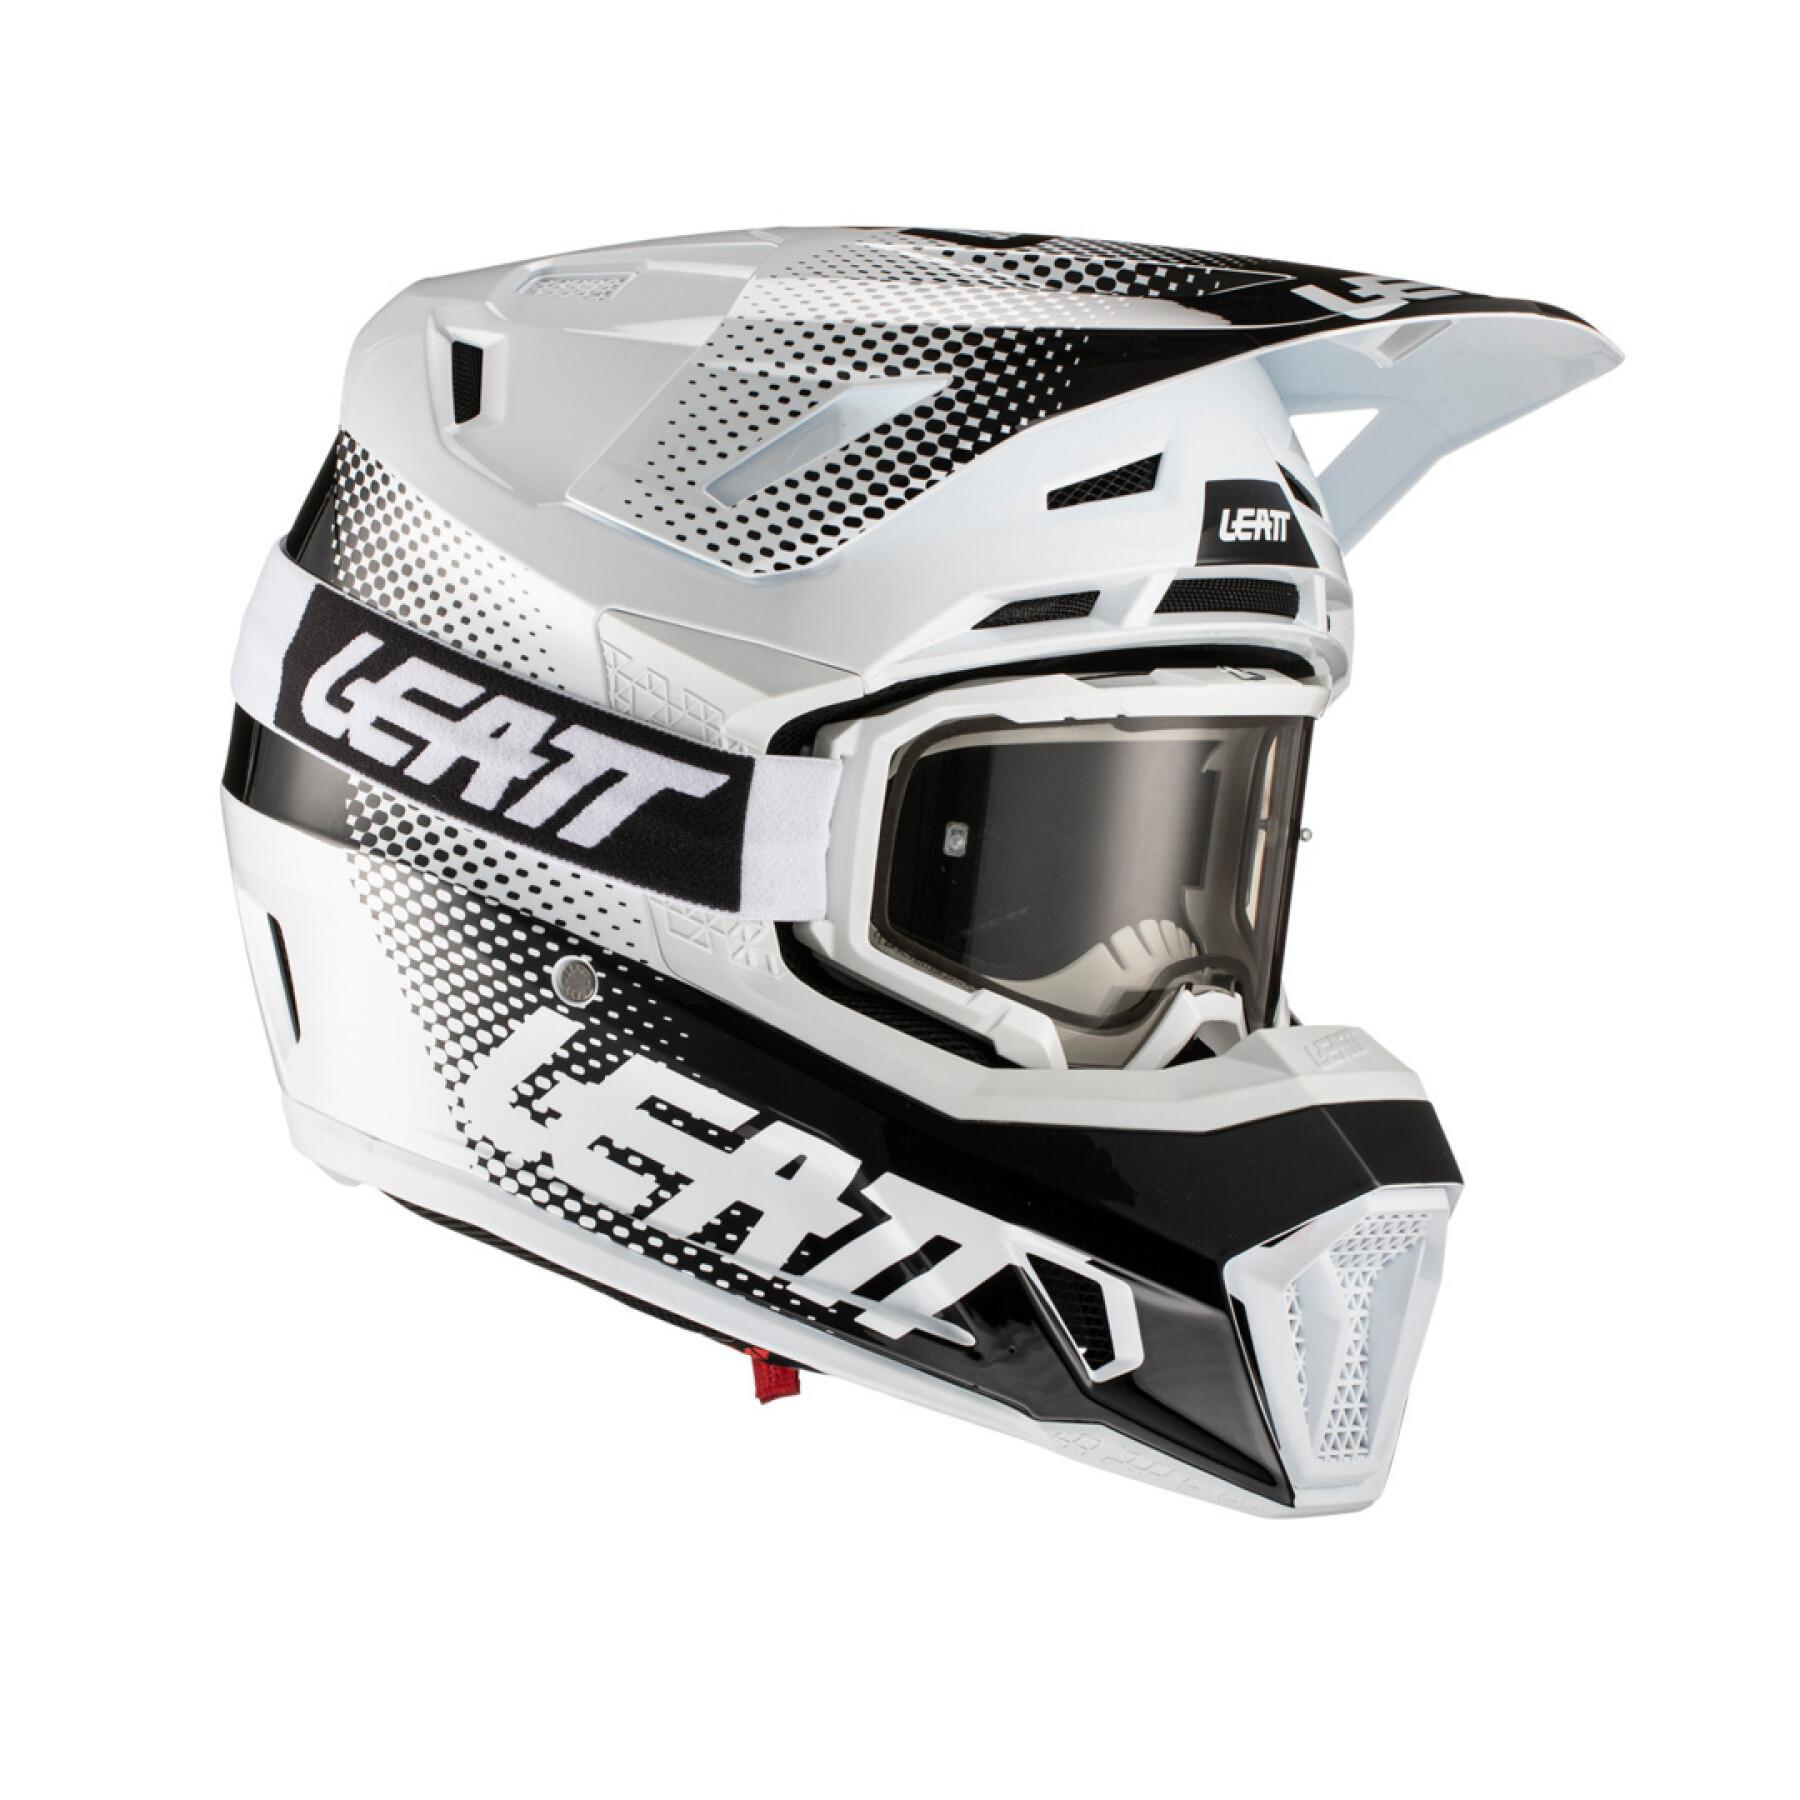 Motocrosshjälm med skyddsglasögon Leatt 7.5 V22